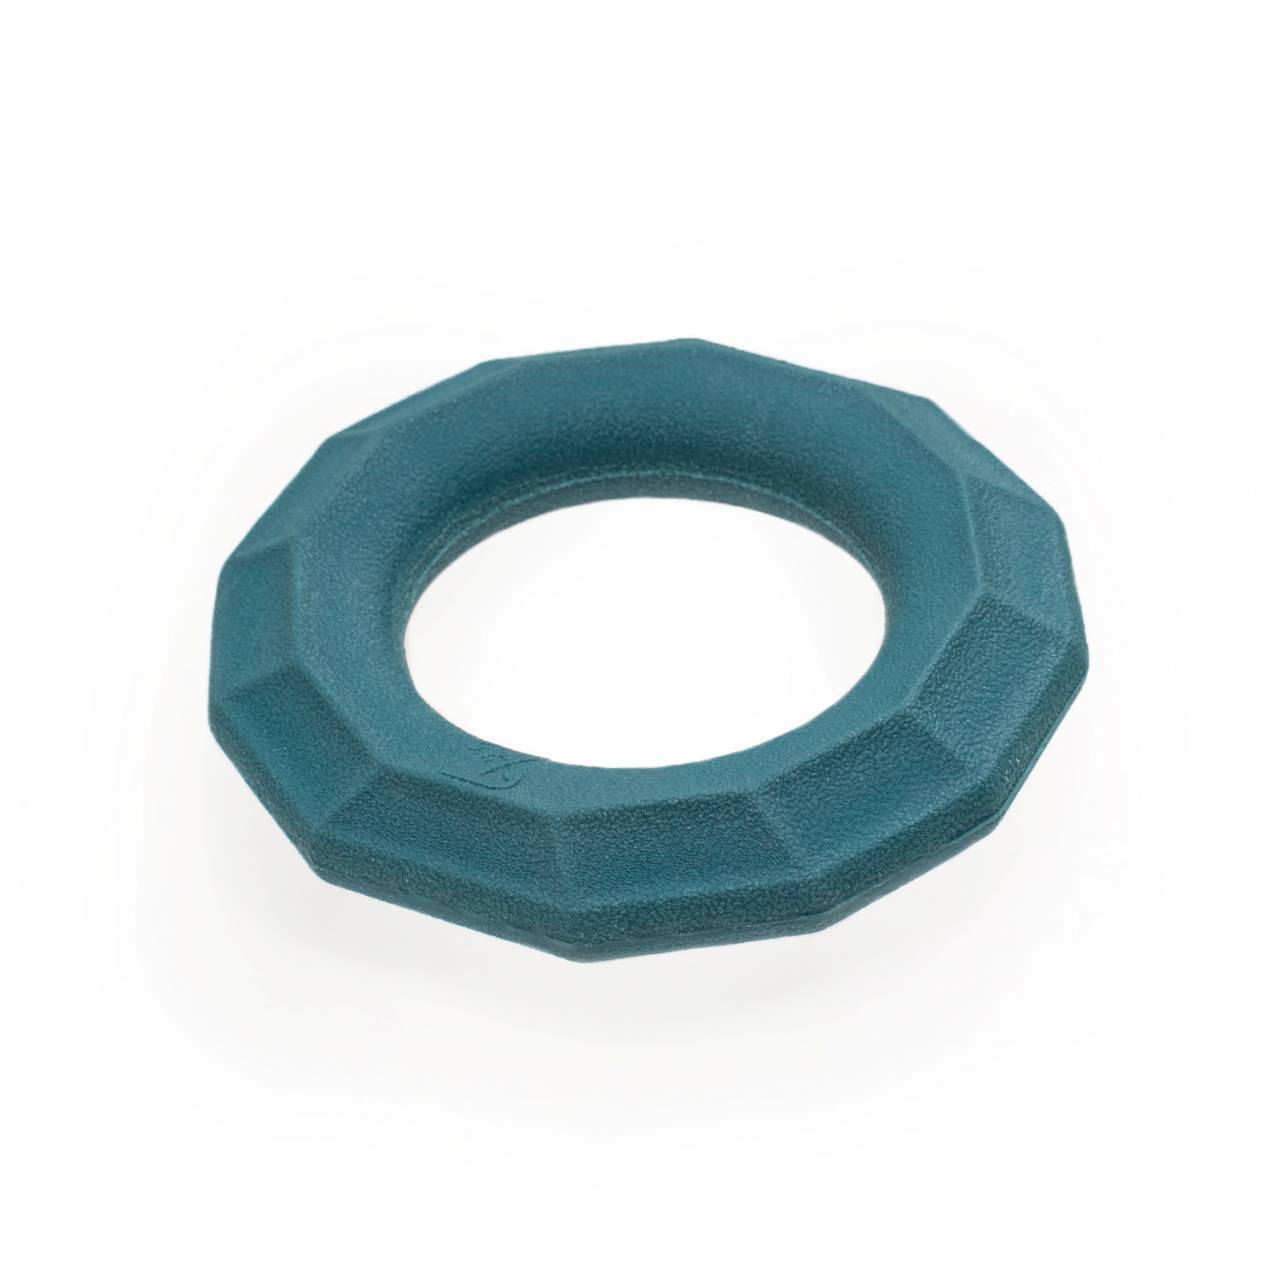 Zippy Paws ZippyTuff+ Emerald Ring Fetch & Tug Dog Toy image 0